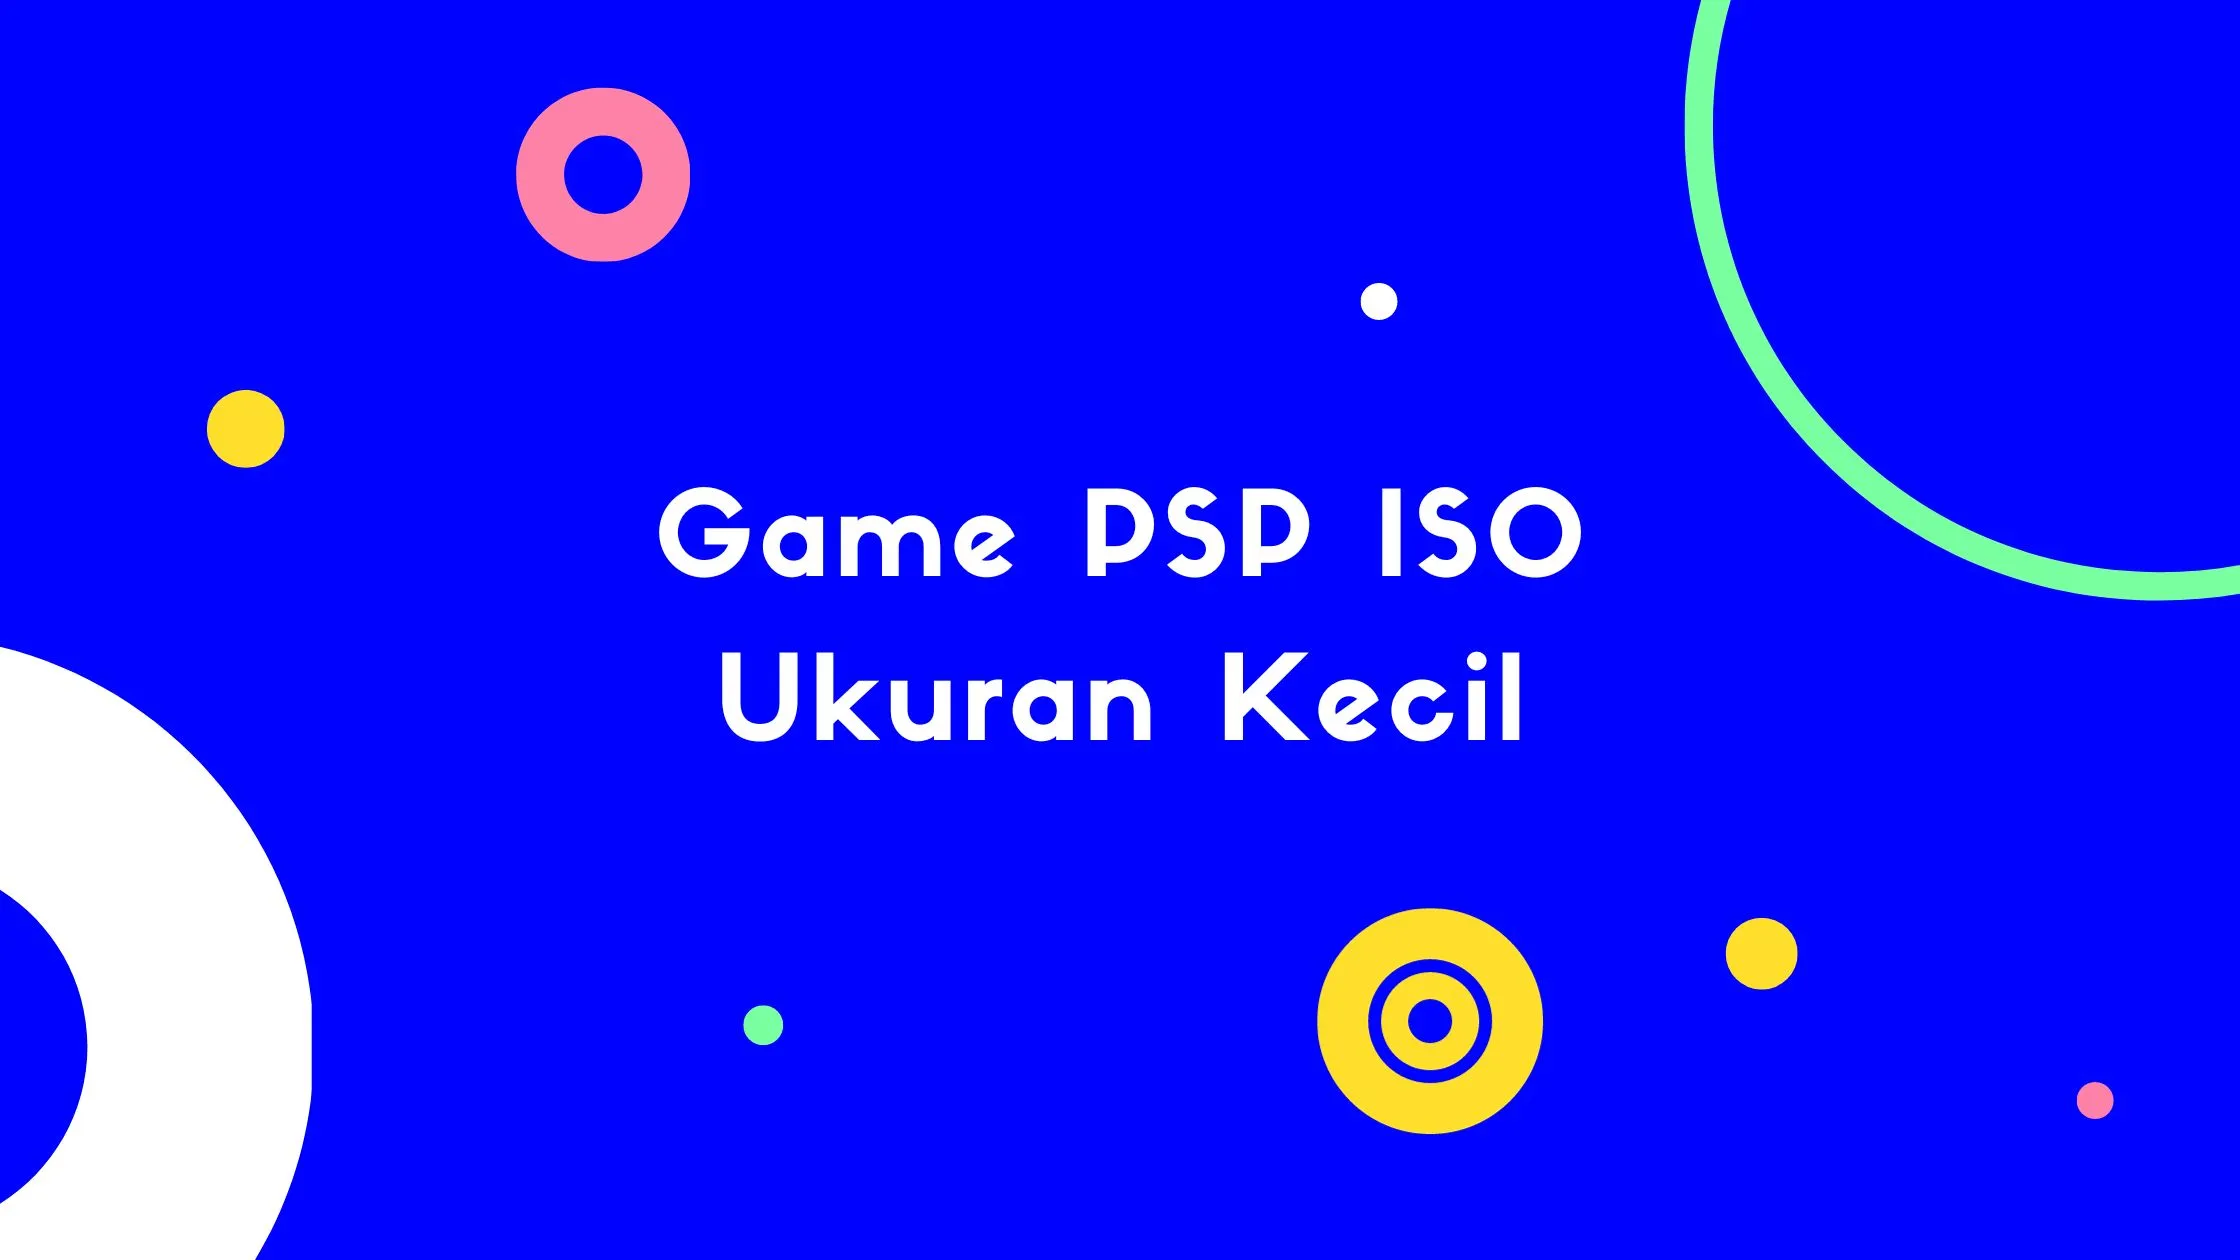 Game PSP ISO Ukuran Kecil